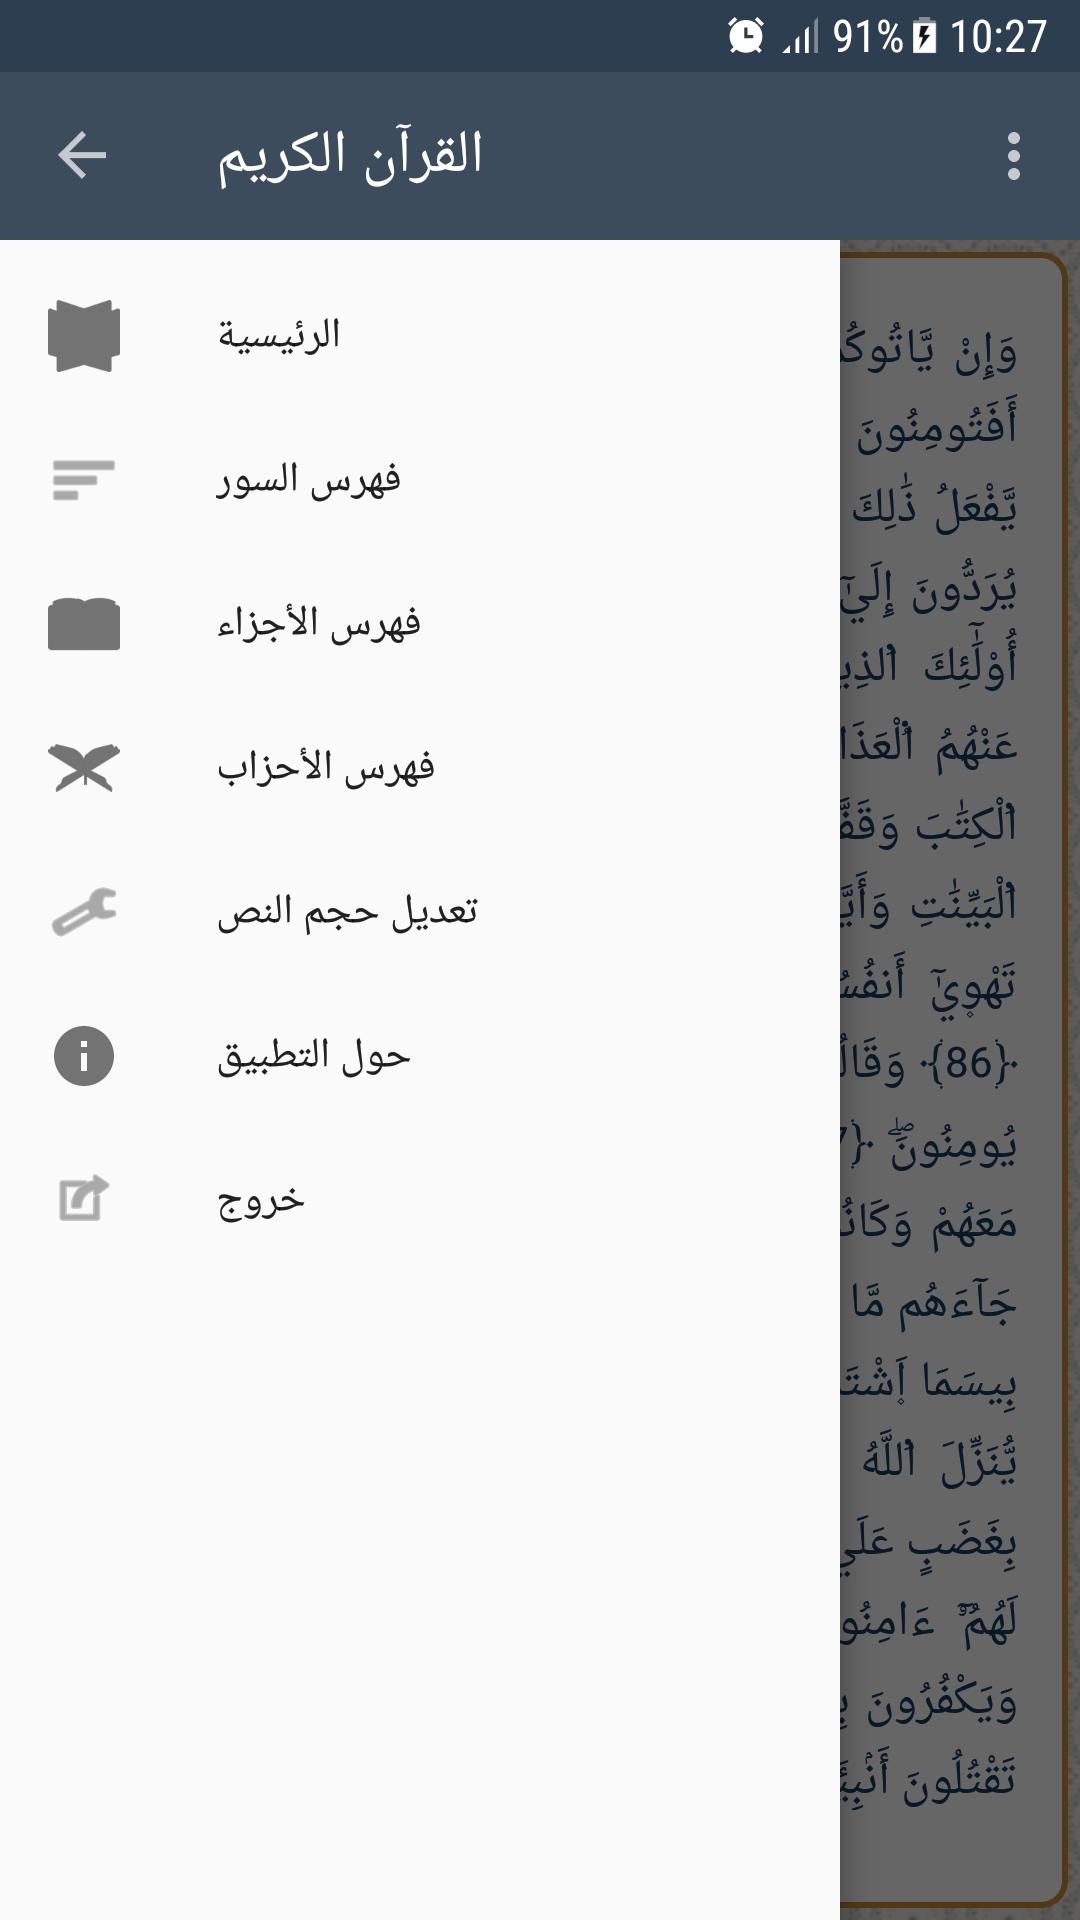 القرآن الكريم - ورش 1.0 Screenshot 2